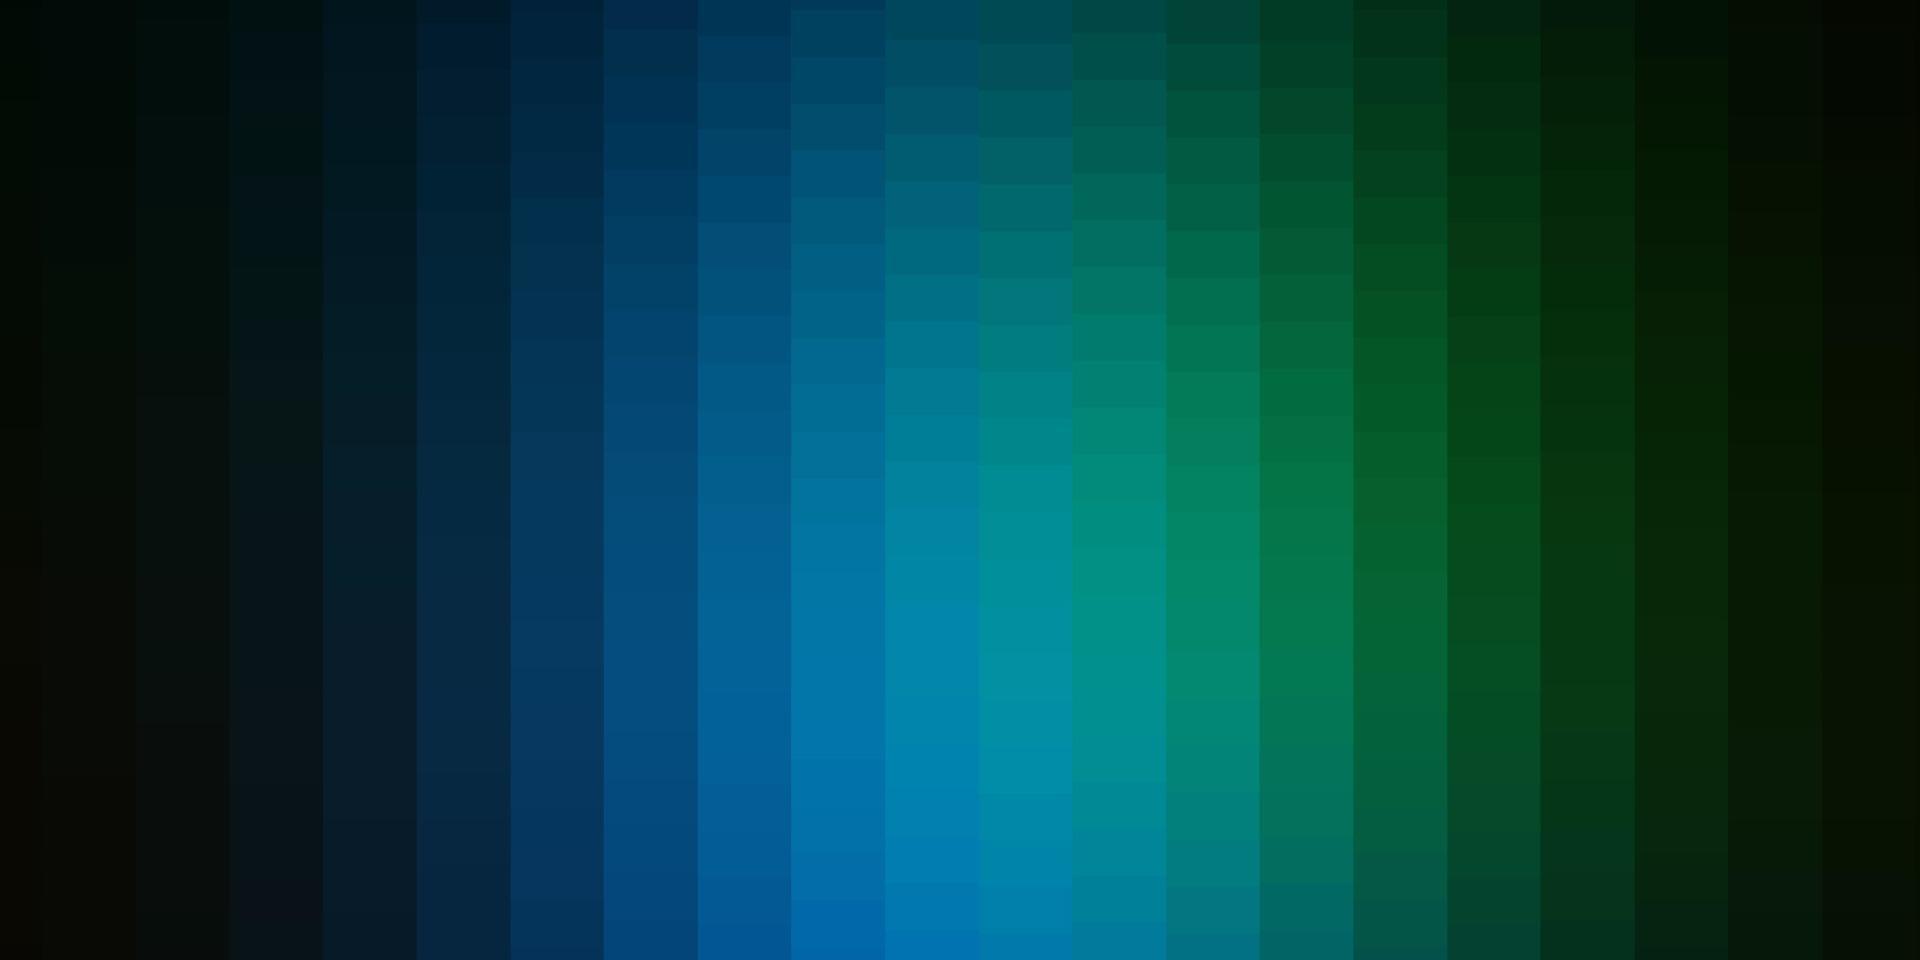 texture de vecteur bleu foncé, vert dans un style rectangulaire.